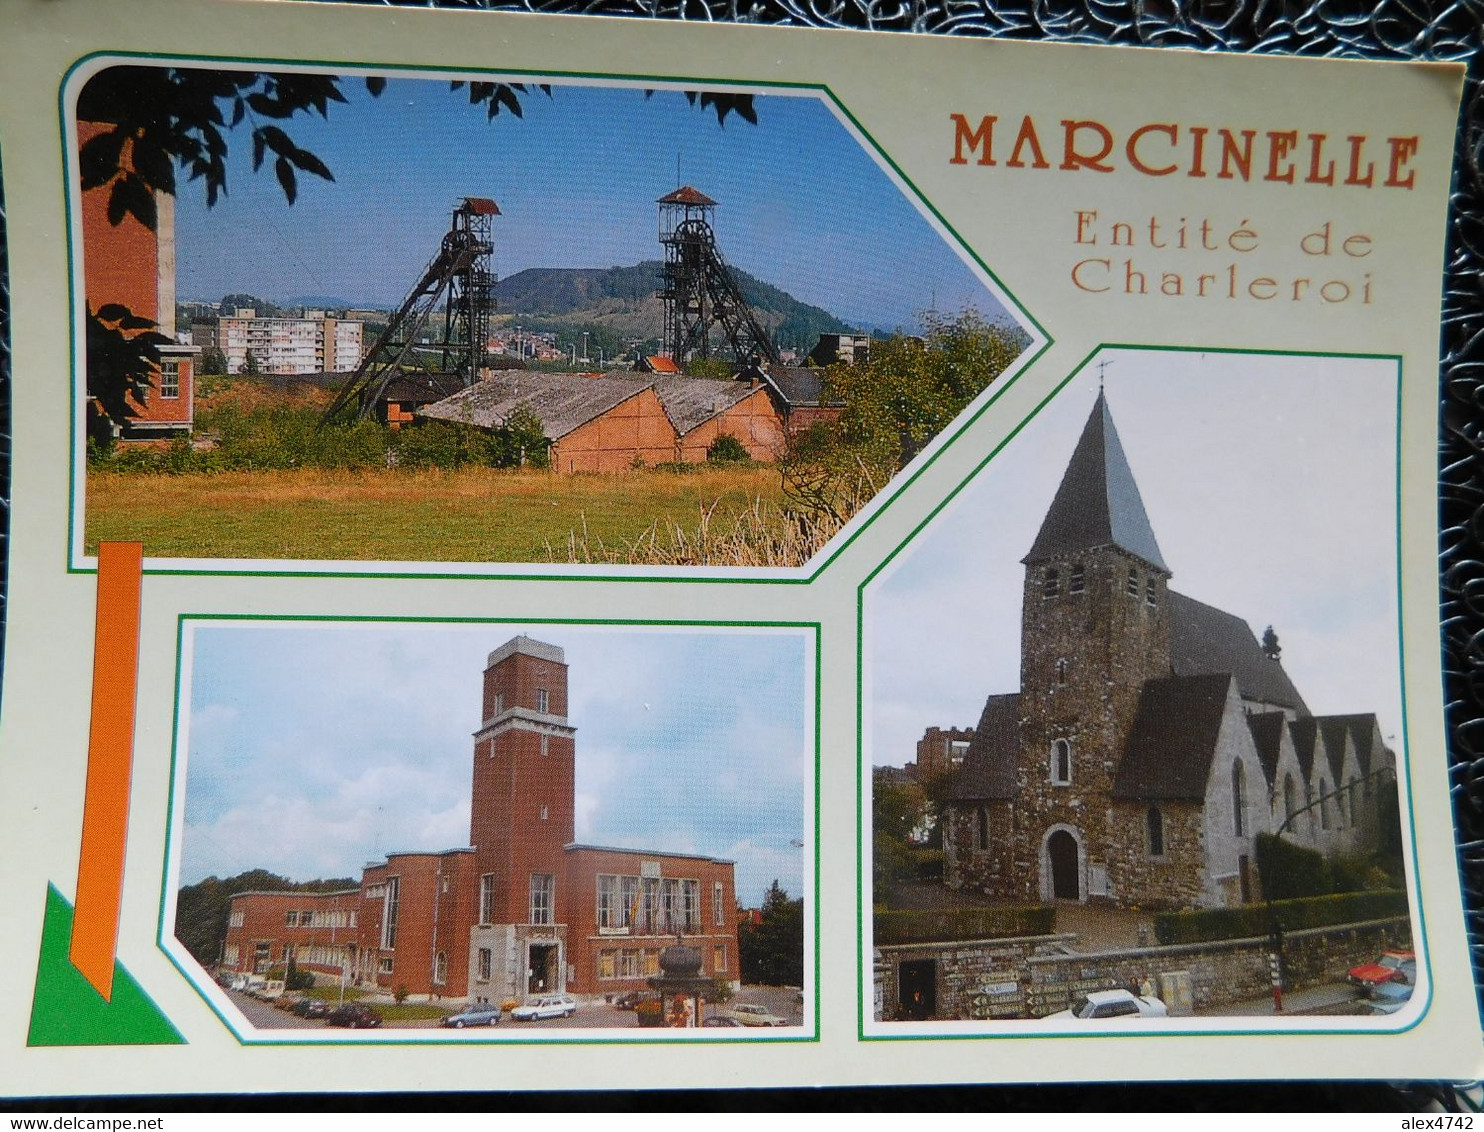 Marcinelle, Bois Du Cazier, église St Martin, Hôtel De Ville  (P13) - Charleroi